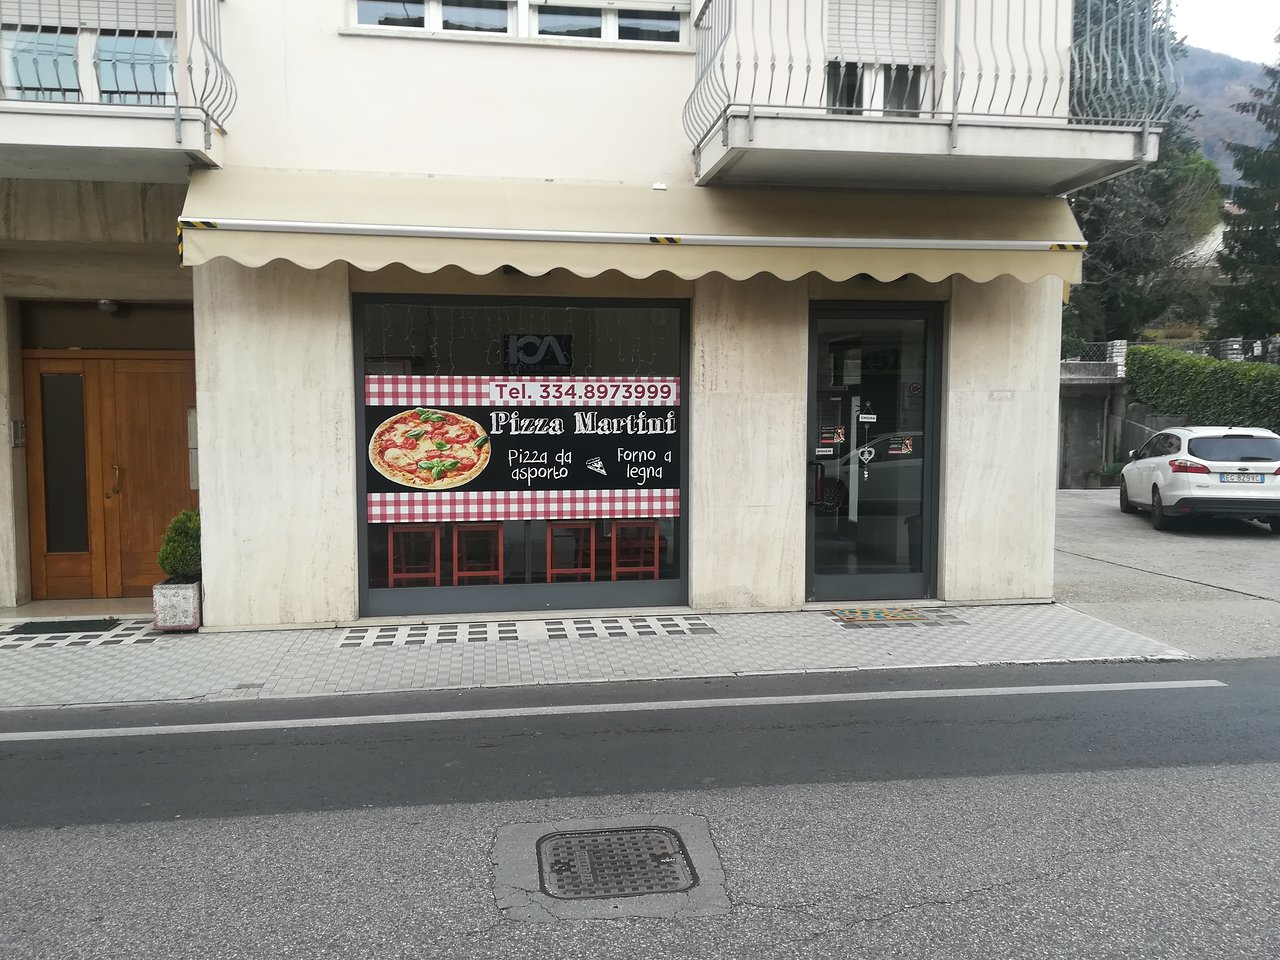 Pizza Martini, Valdobbiadene